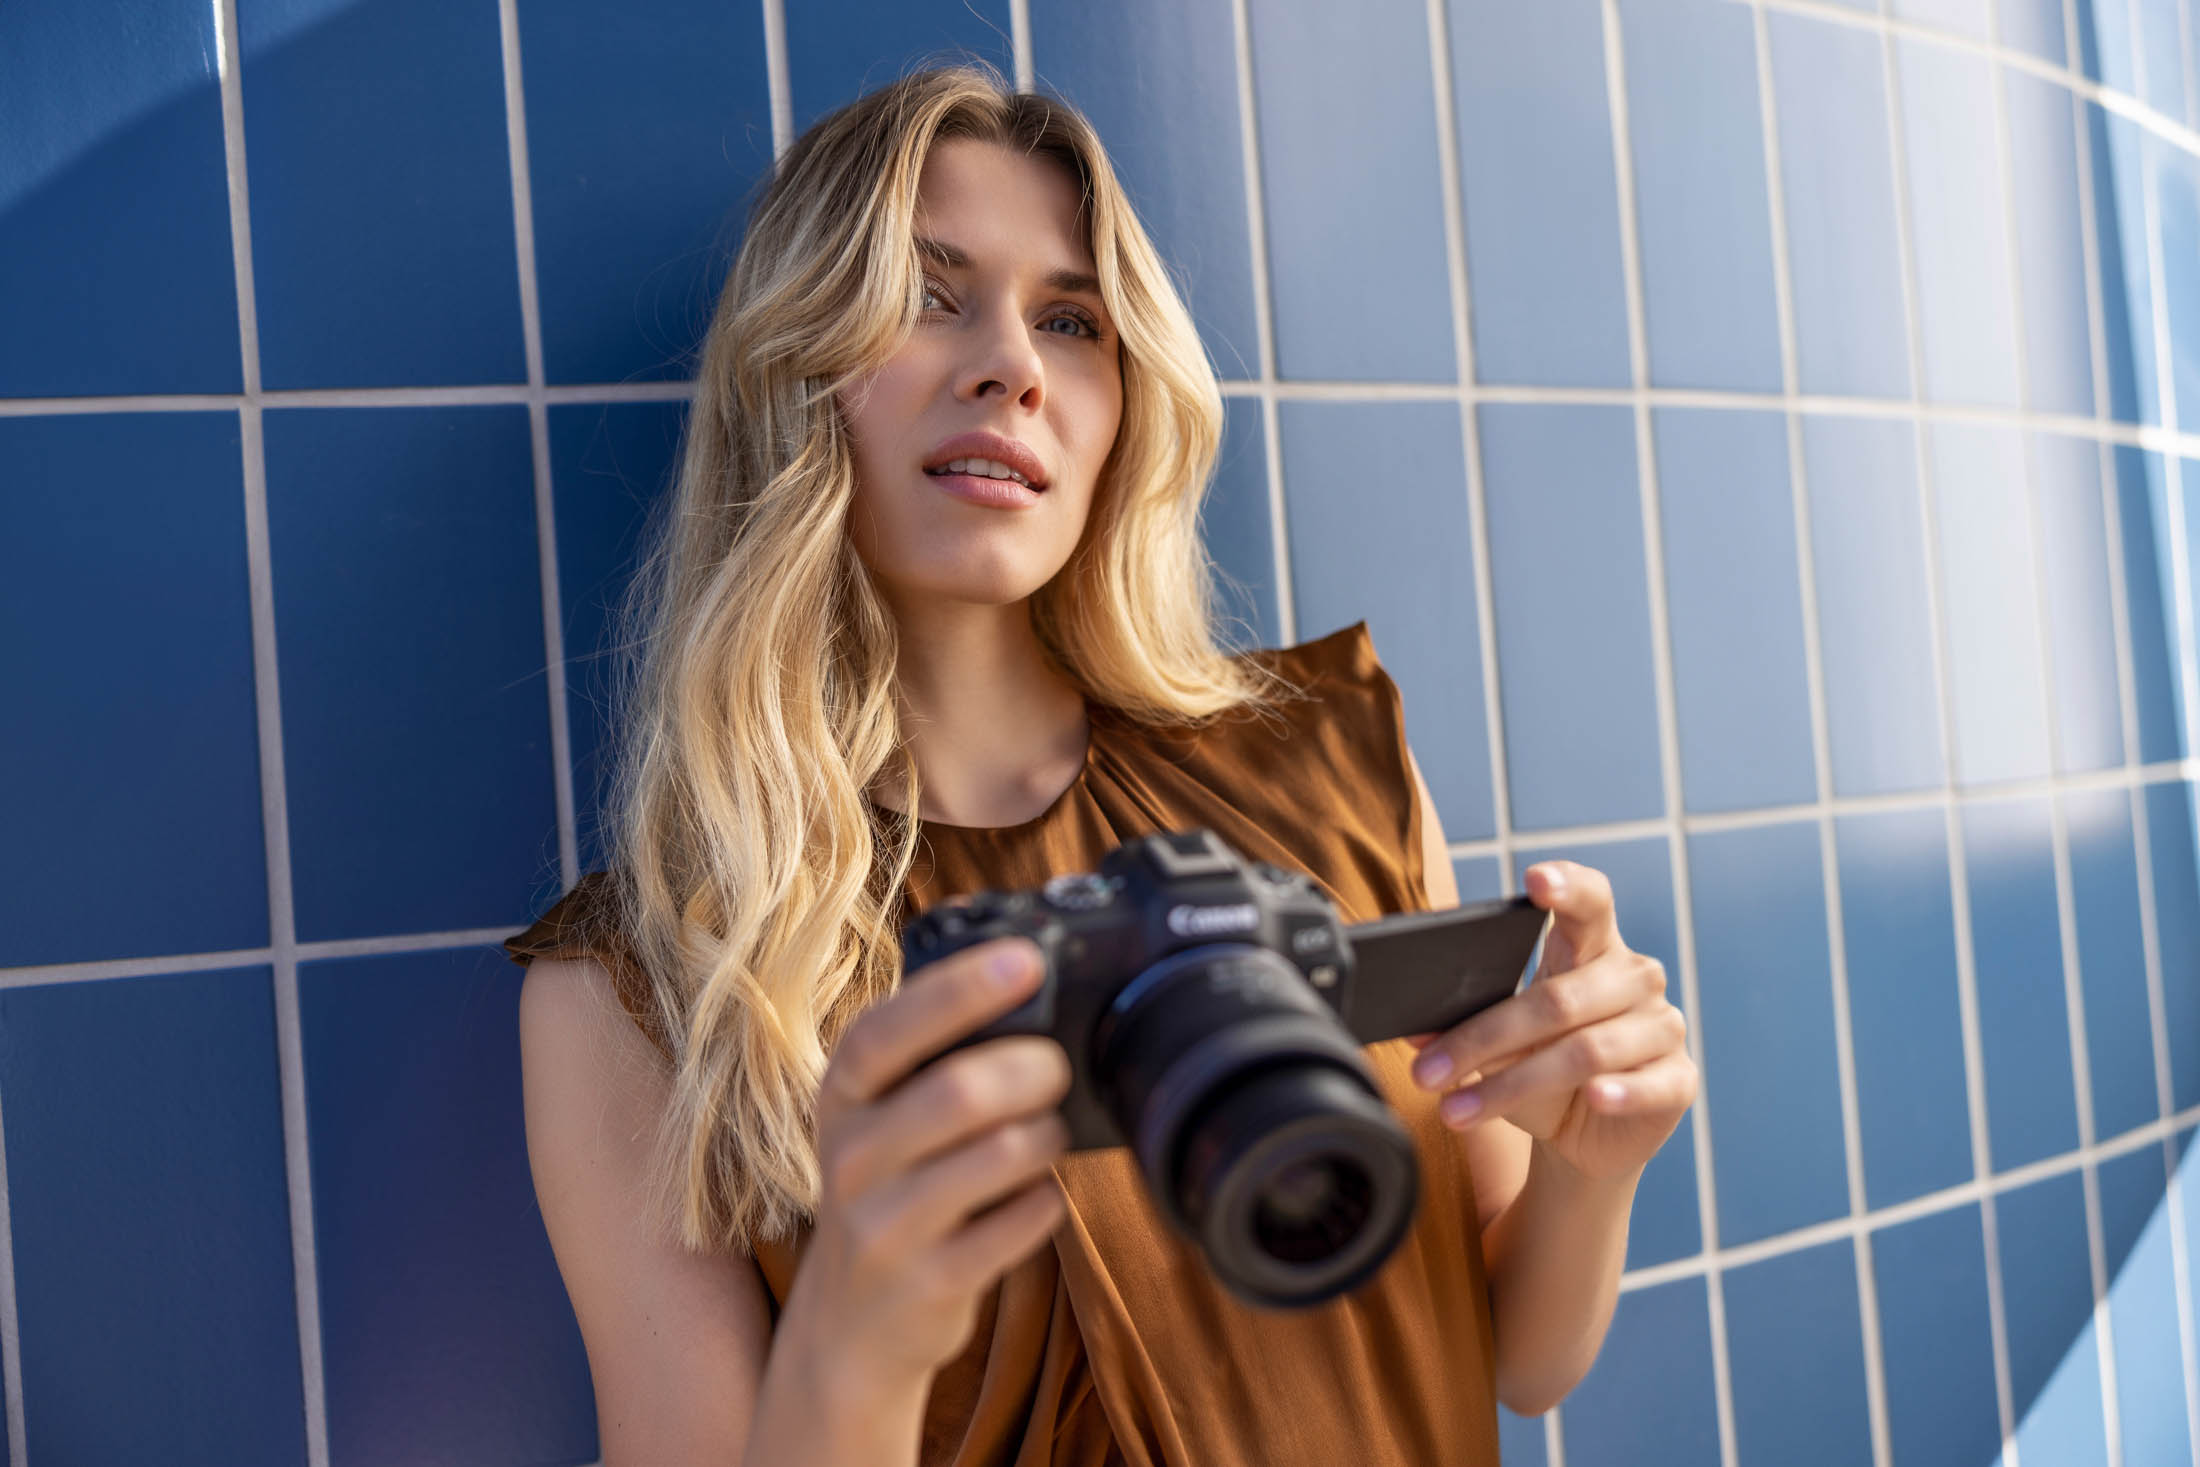 Canon, Rheinpavillion Bonn. Eine Frau mit blondem Haar betrachtet Bilder auf einer Digitalkamera und steht vor einer blau gefliesten Wand. Sie trägt ein ärmelloses Top und sieht nachdenklich aus. © Fotografie Tomas Rodriguez